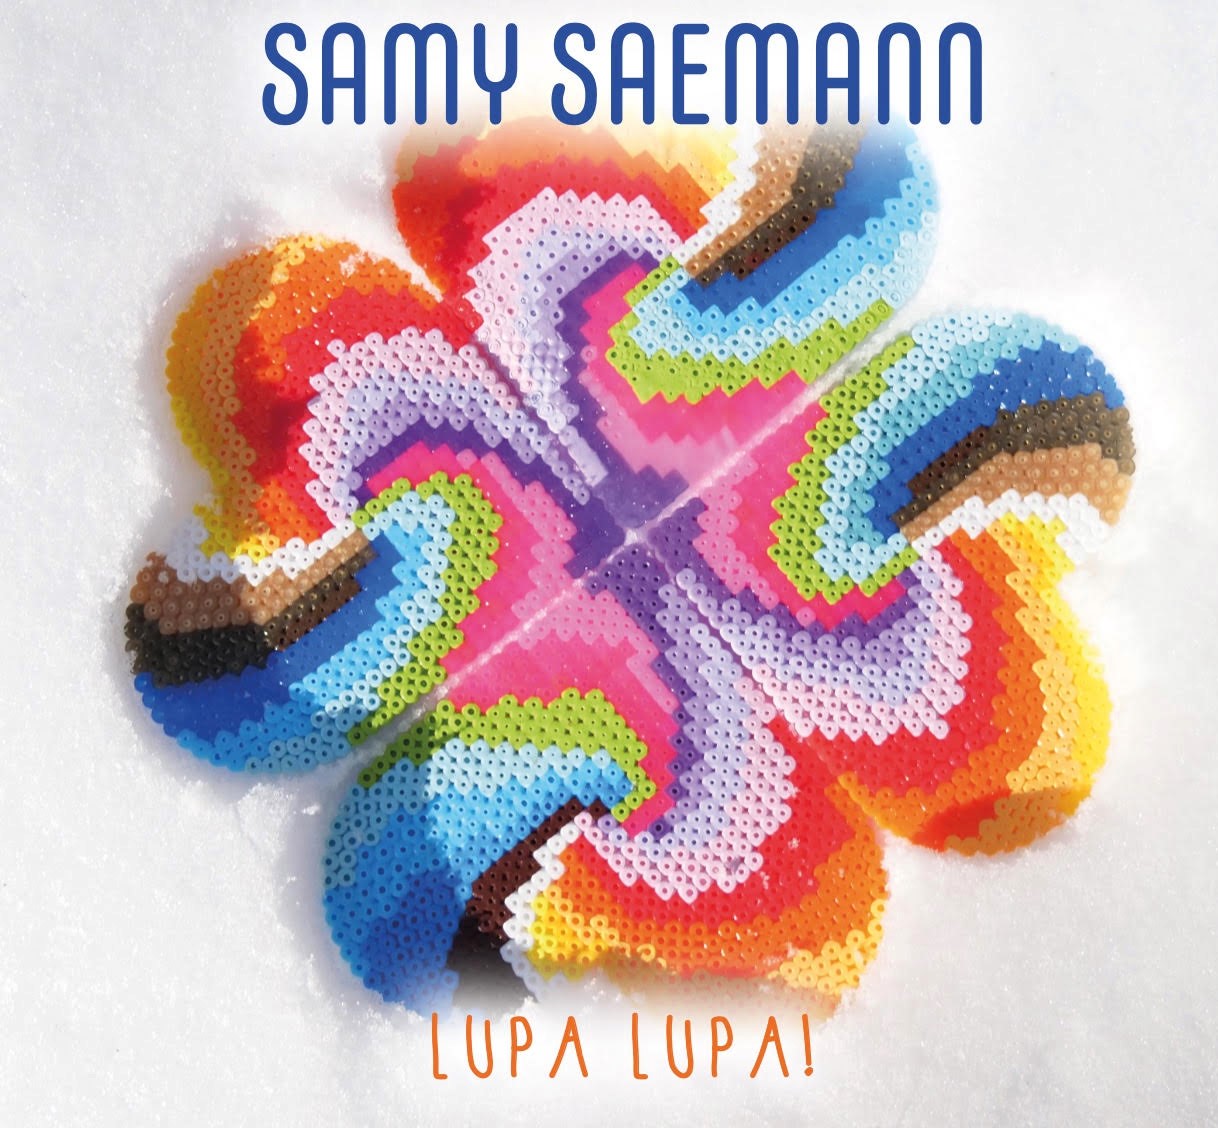 (c) Samy-saemann.de